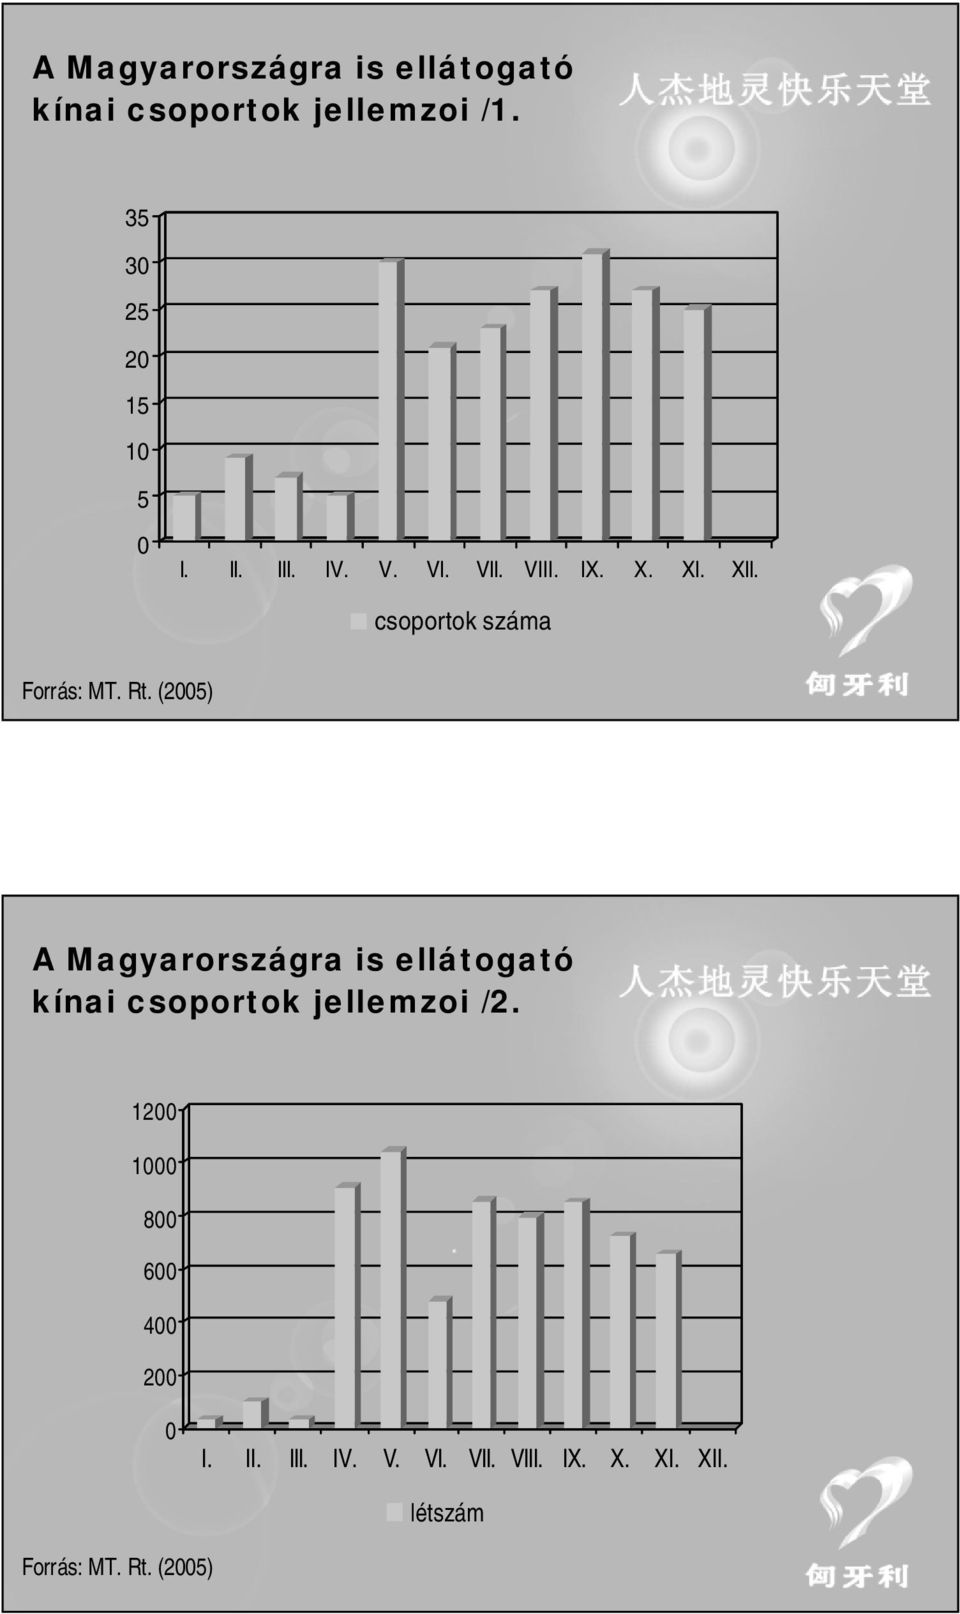 (25) A Magyarországra is ellátogató kínai csoportok jellemzoi /2.